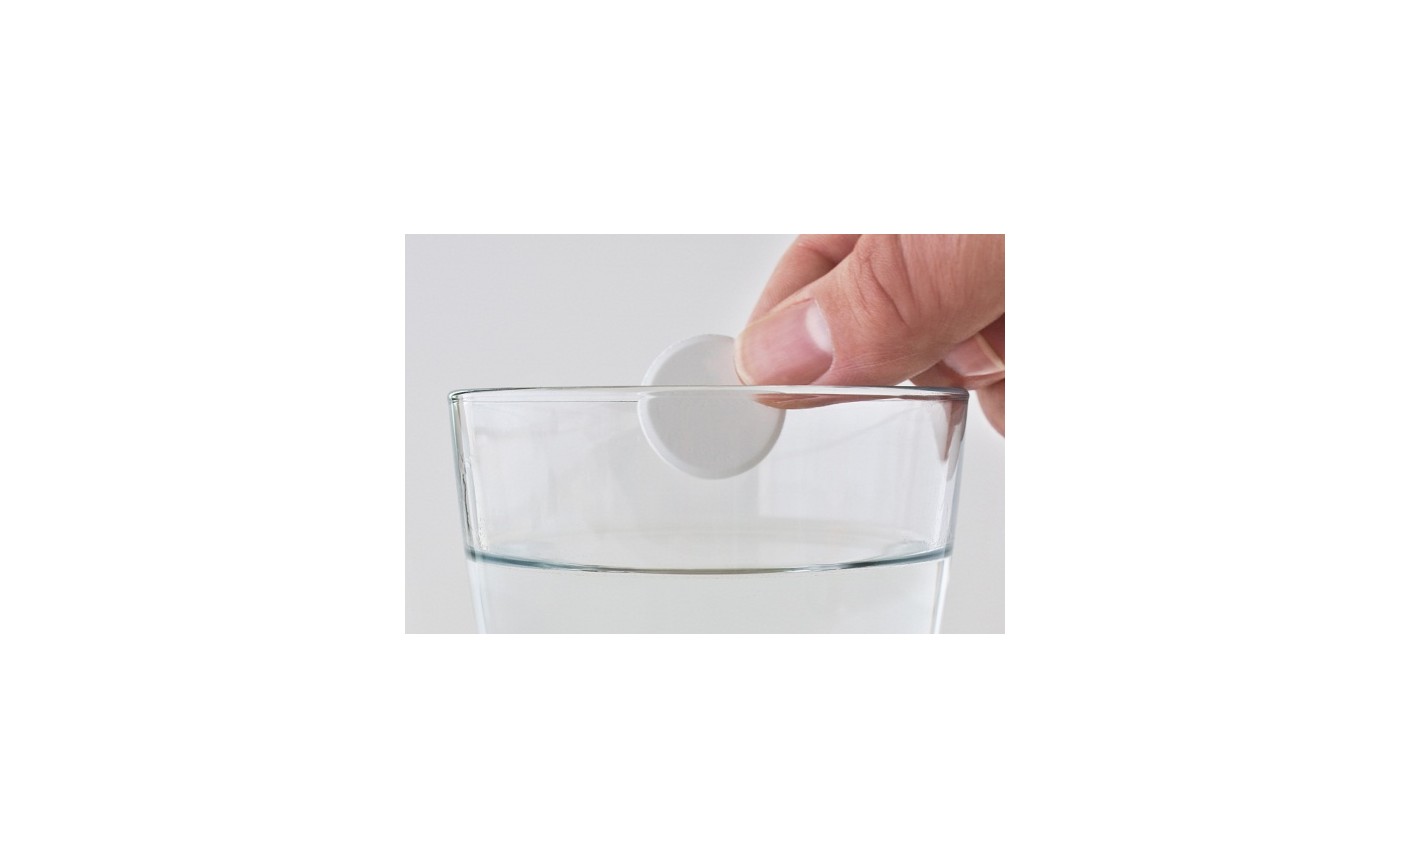 Sprawdź to w szklance wody. Jak przetestować jakość tabletek solnych?